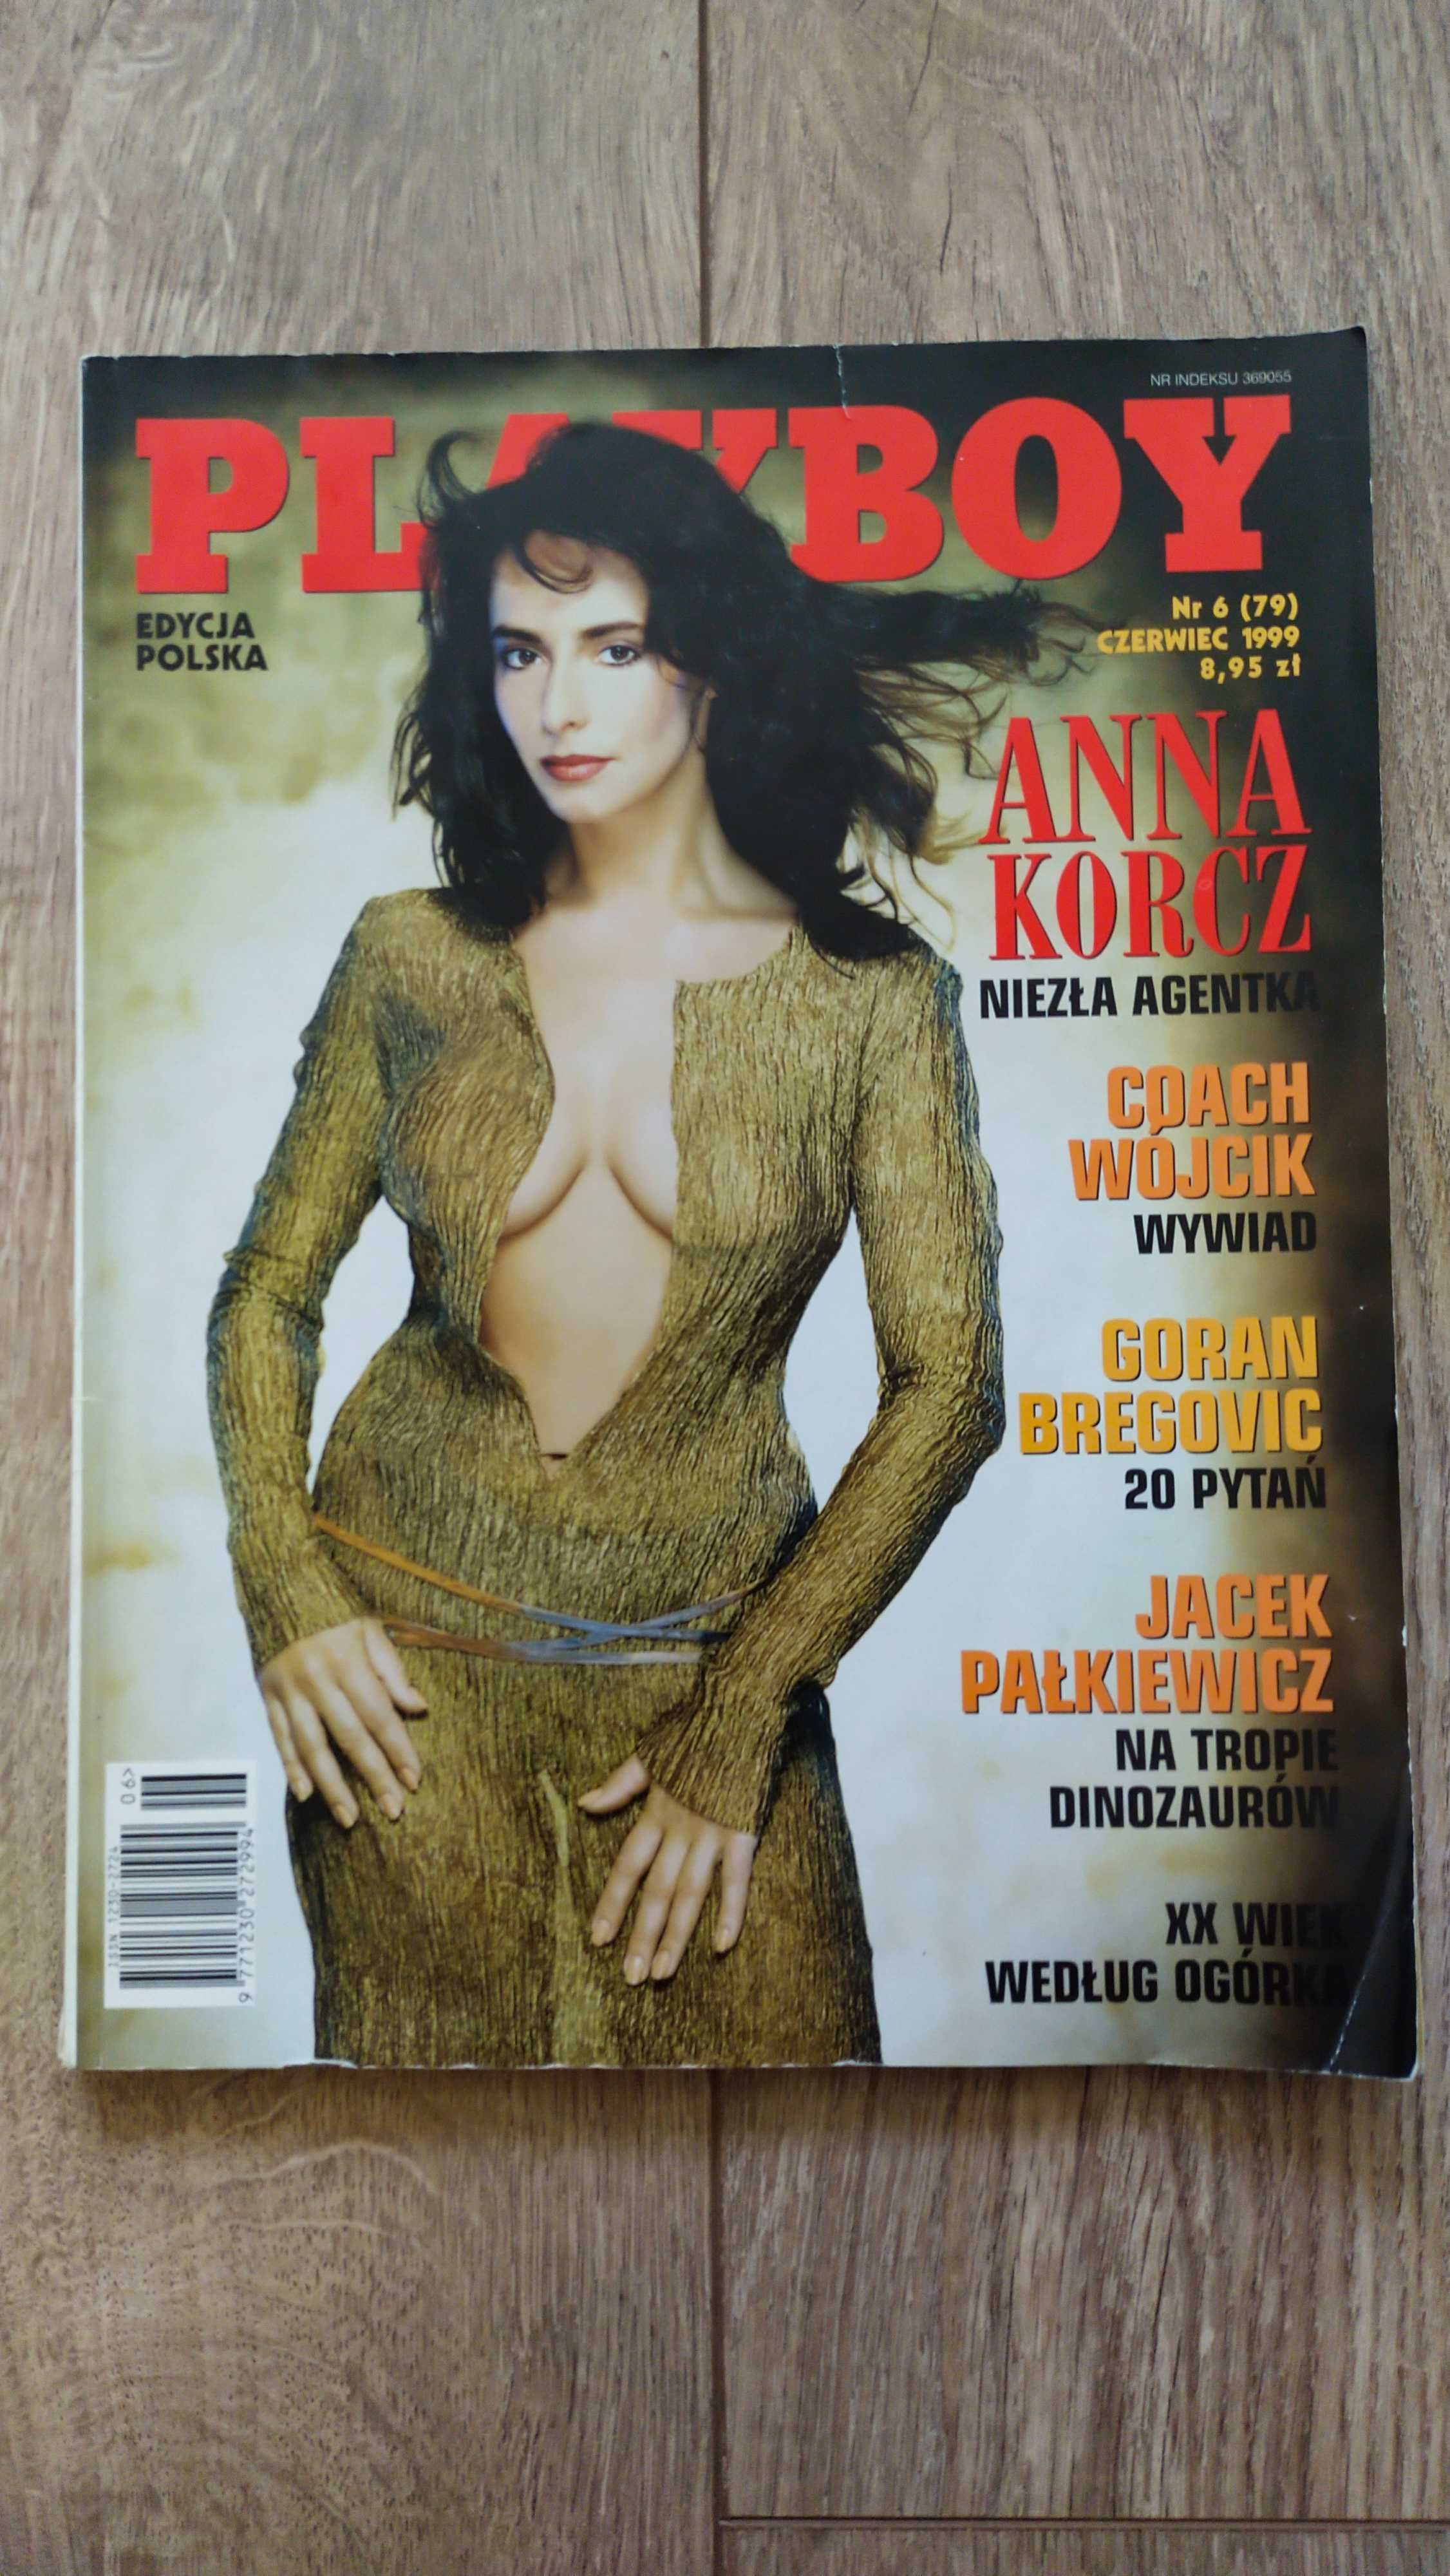 Playboy, Nr 6 (79), czerwiec 1999